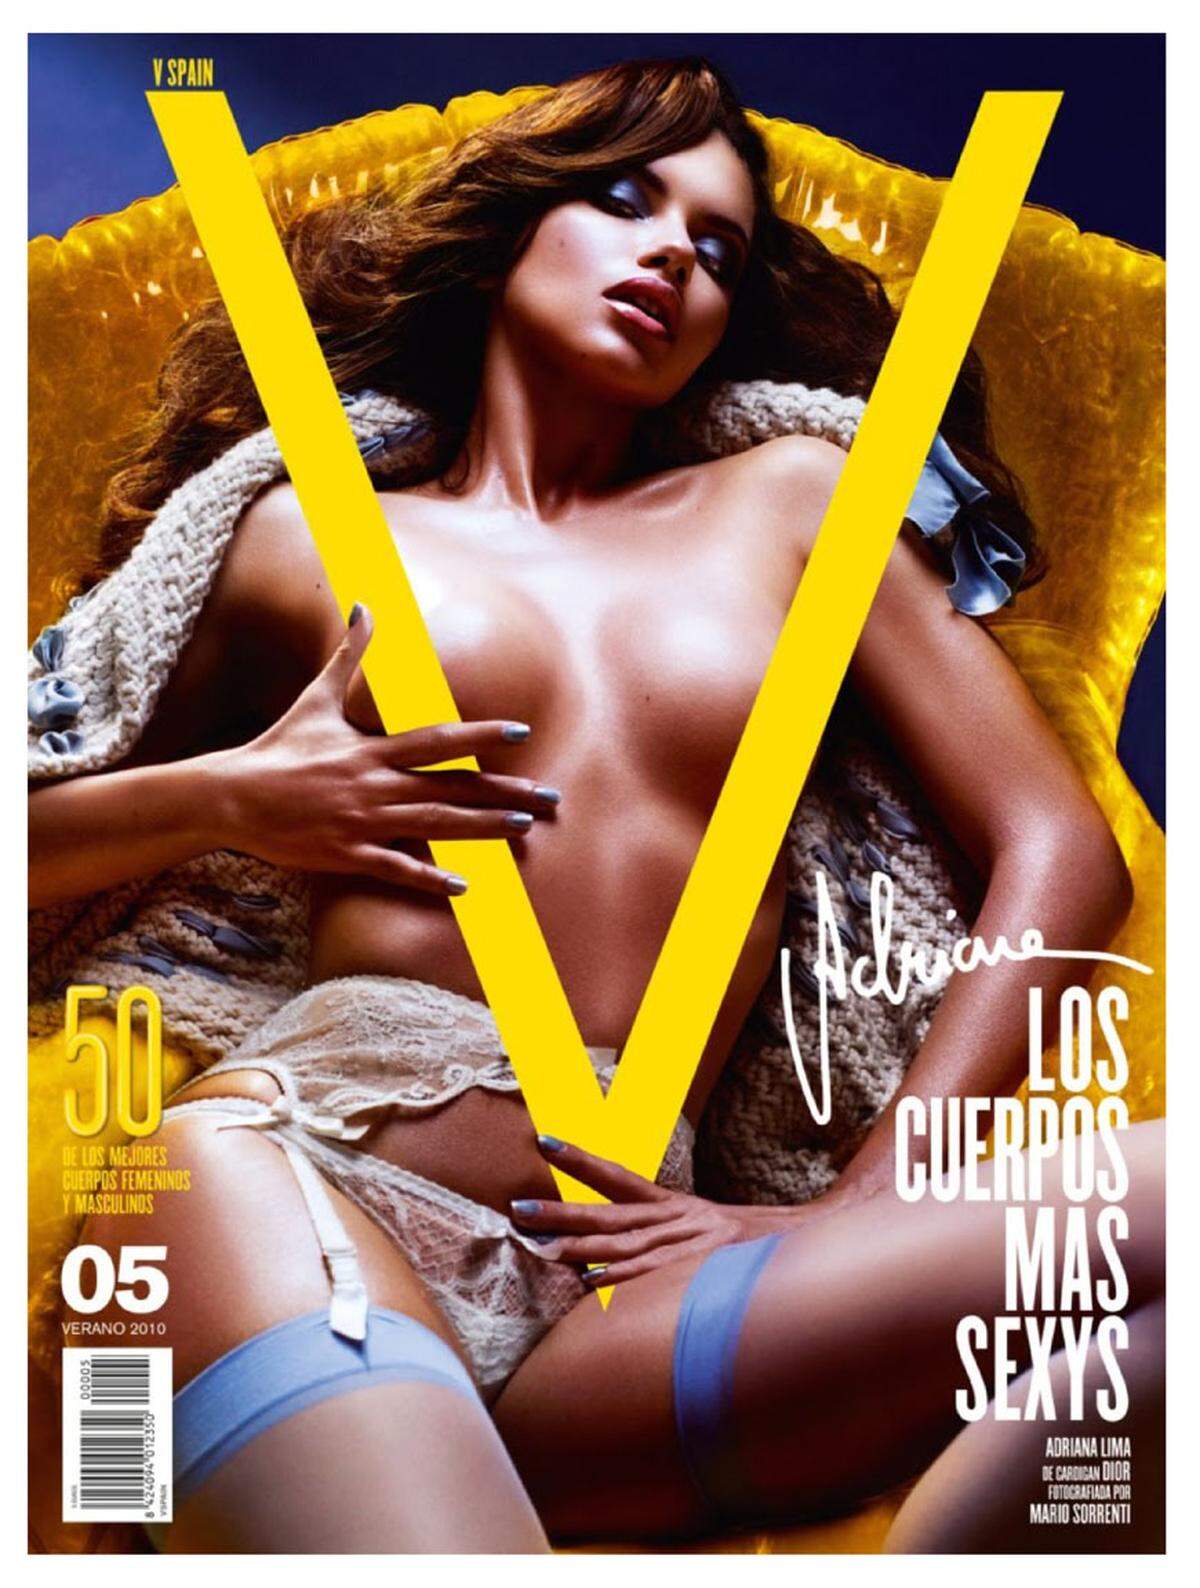 Models.com hat die Models mit dem größten Sexappeal in einer Liste zusammengefasst. Dabei hat man ermittelt, welche Models von Wäsche- und Bademodenlabels sowie Männermagazinen engagiert werden. Adriana Lima arbeitet bereits seit 1999 für Victoria's Secret, zeigt ihre Reize aber auch auf dem Cover von V, GQ oder Vogue.